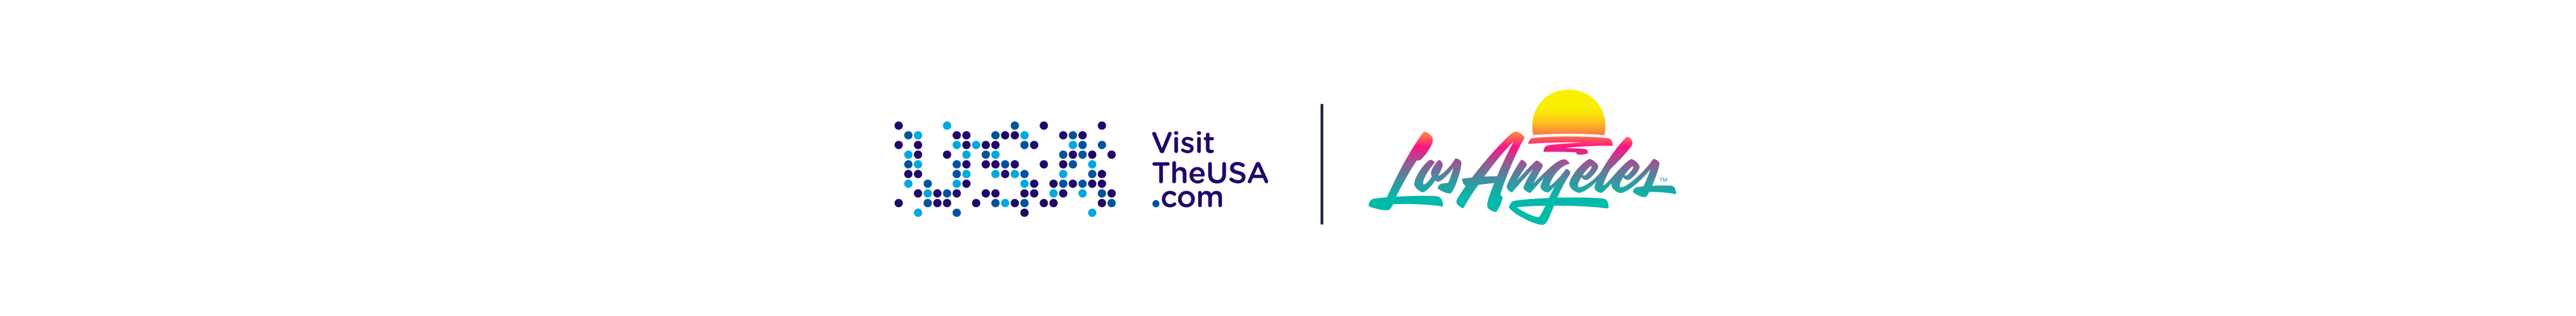 Brand USA x LA tourism logo lockup